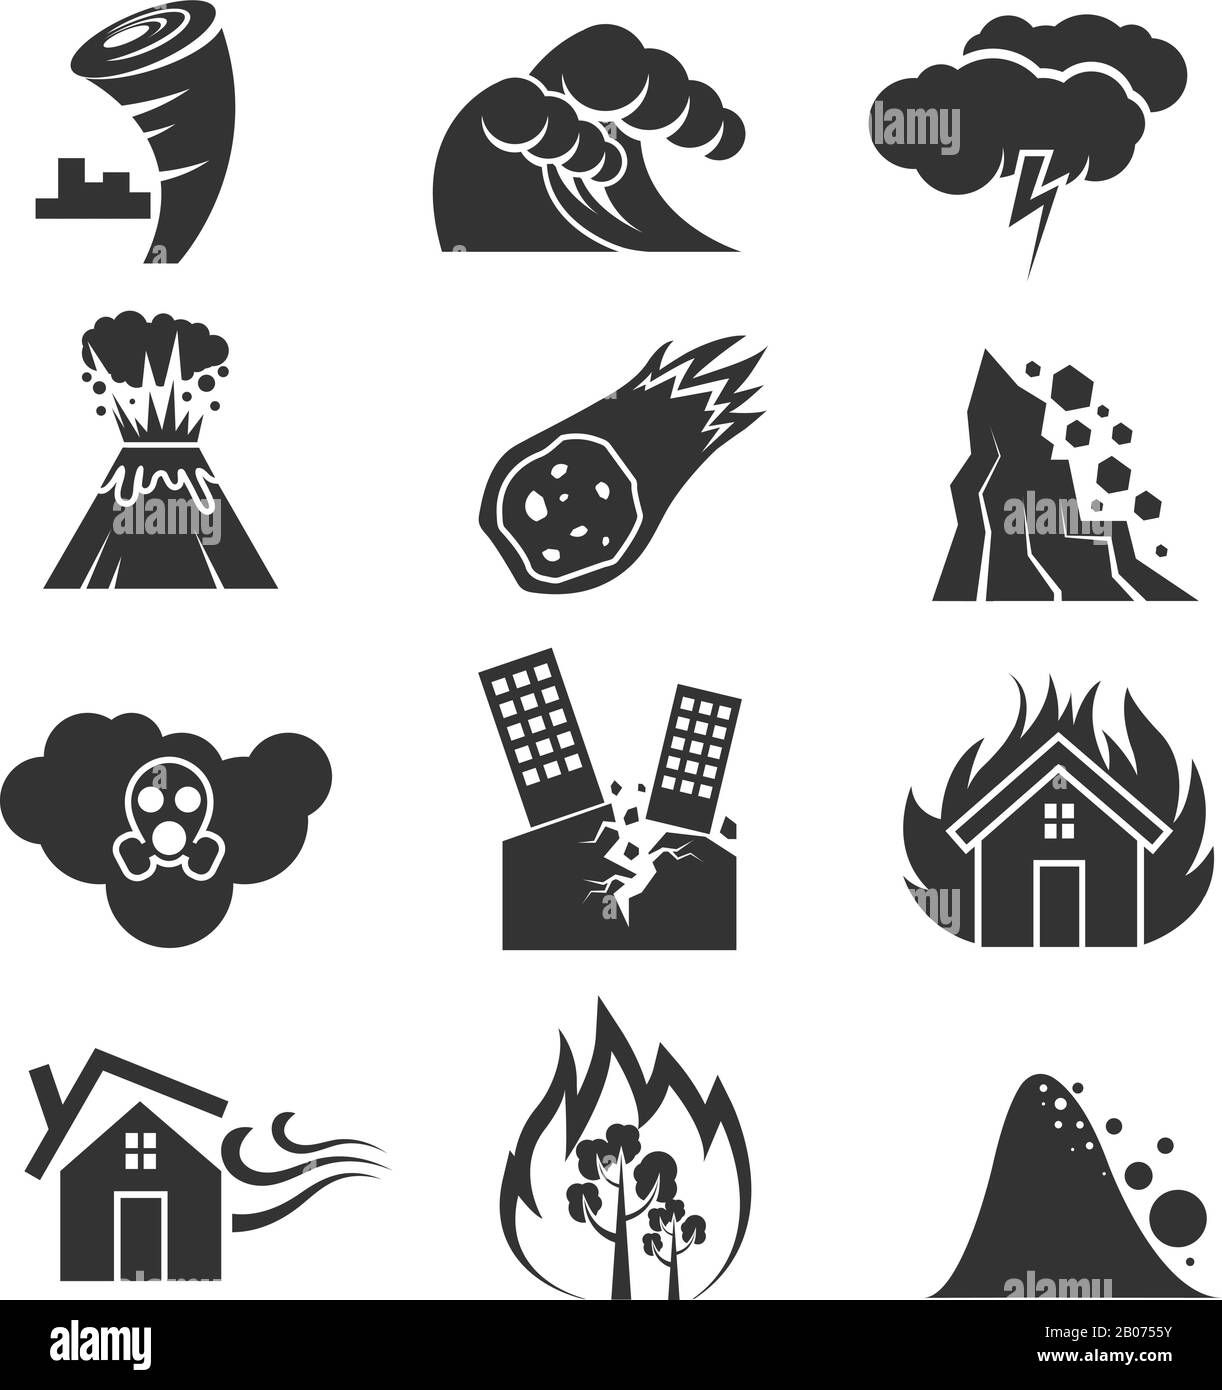 Les icônes de vecteurs de catastrophe d'incendie et de tsunami, de tempête de neige et de tornade, d'ouragan et de tremblement de terre. Volcan et météorite, rockfal et nuage toxique illustration Illustration de Vecteur